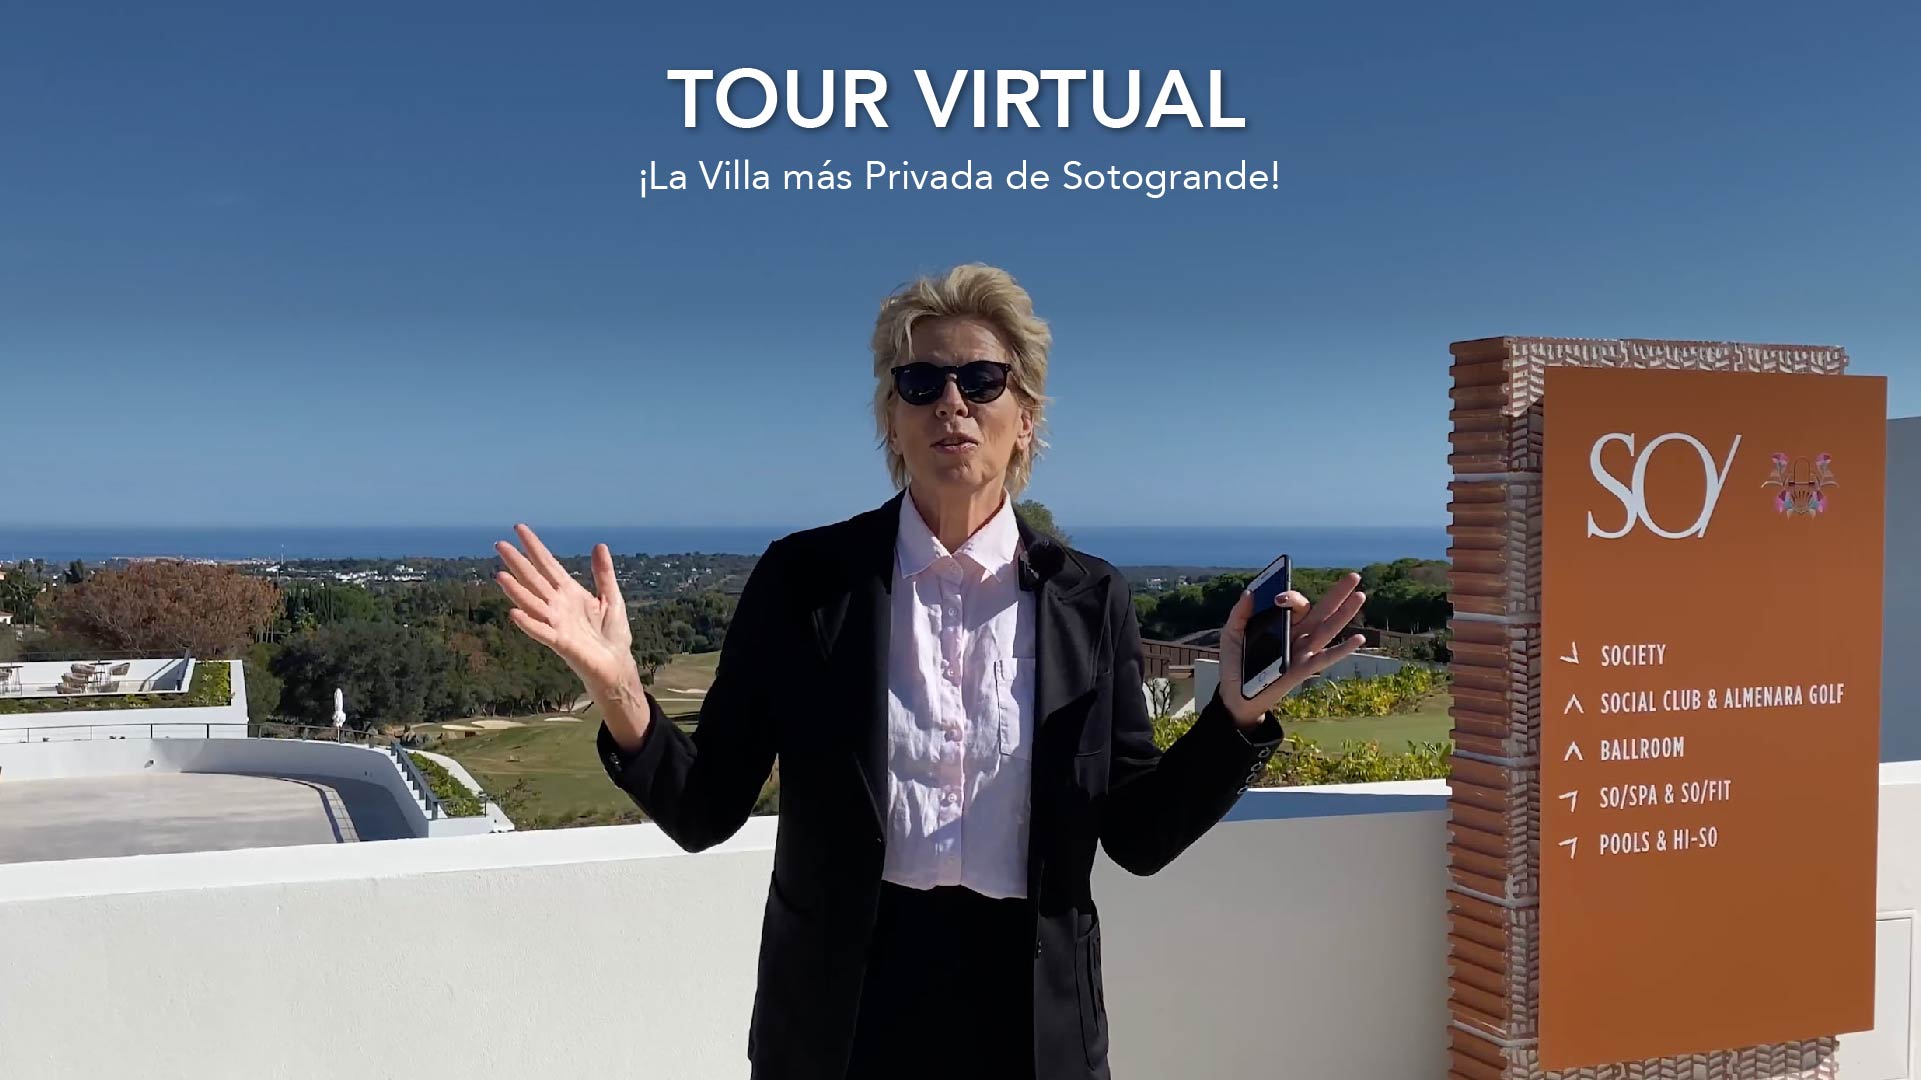 La Villa más Privada de Sotogrande, mira el Tour Tirtual!